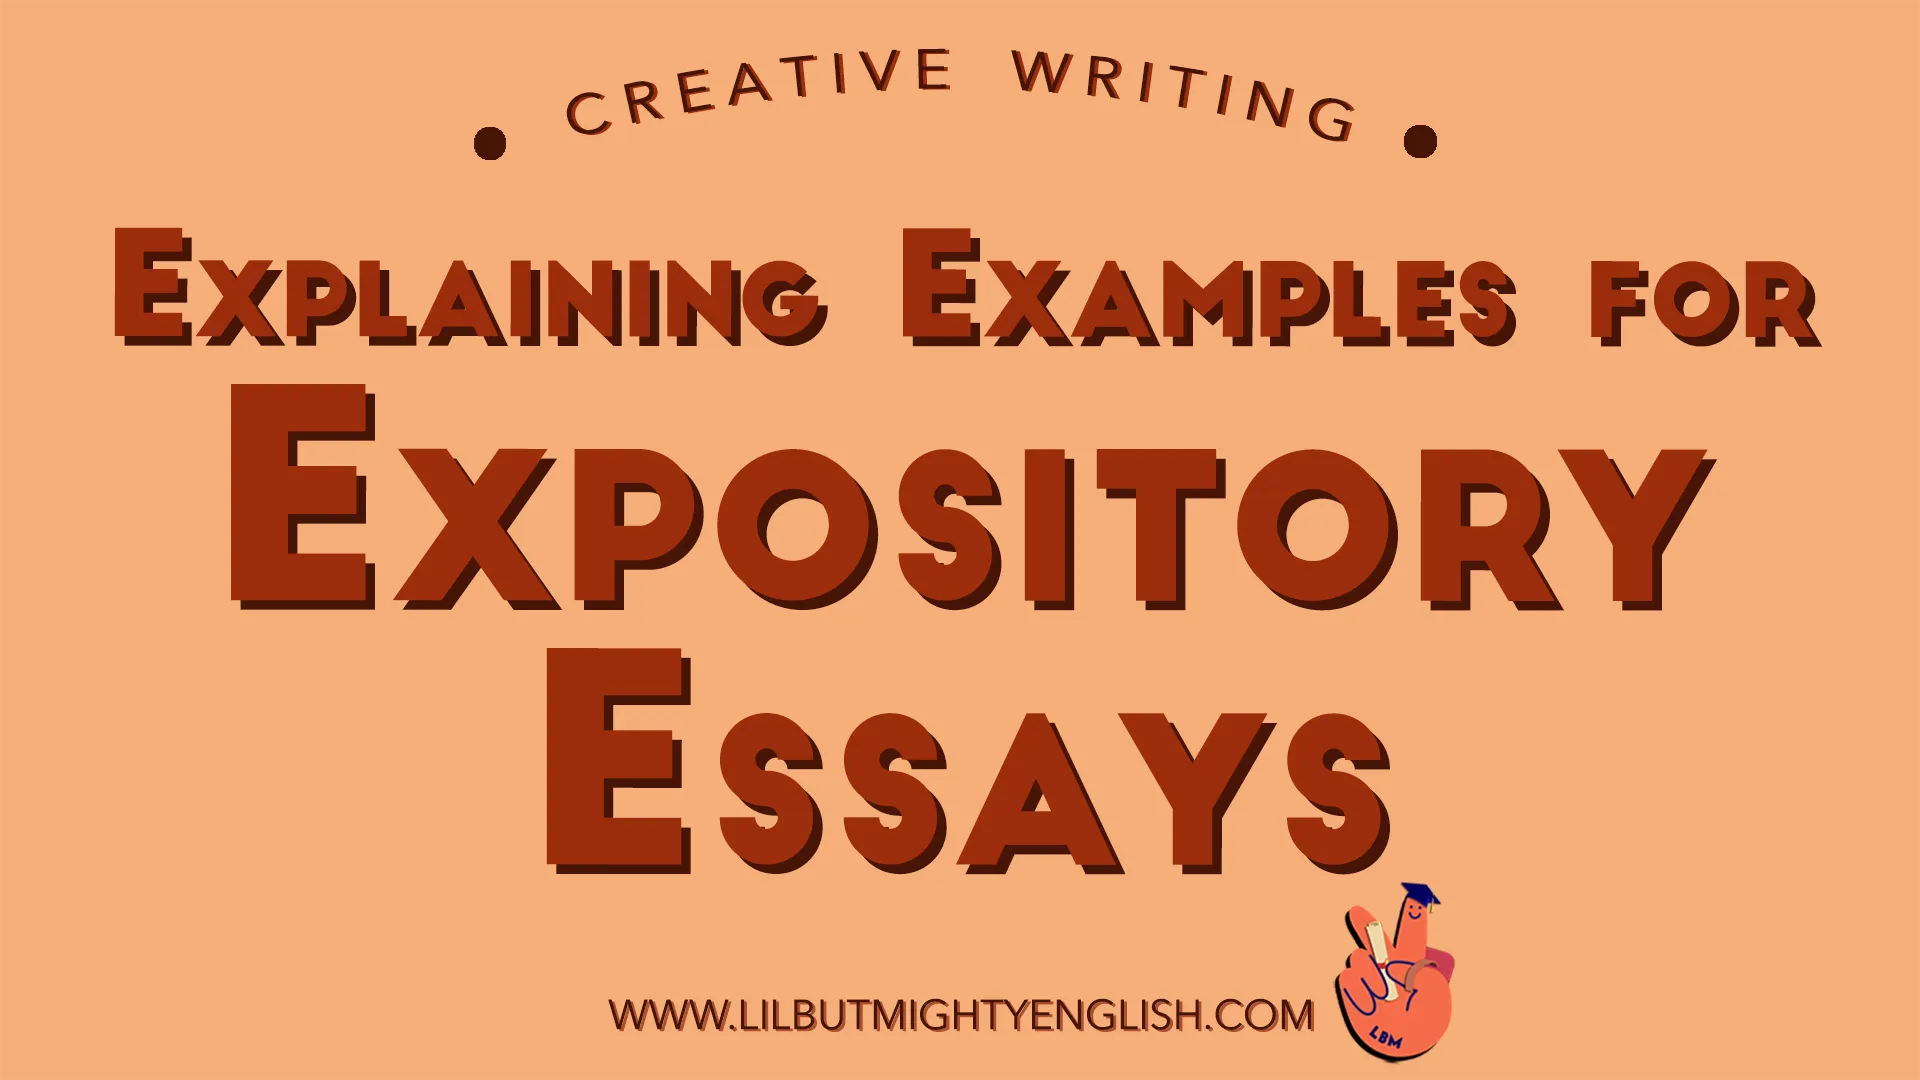 expository essays